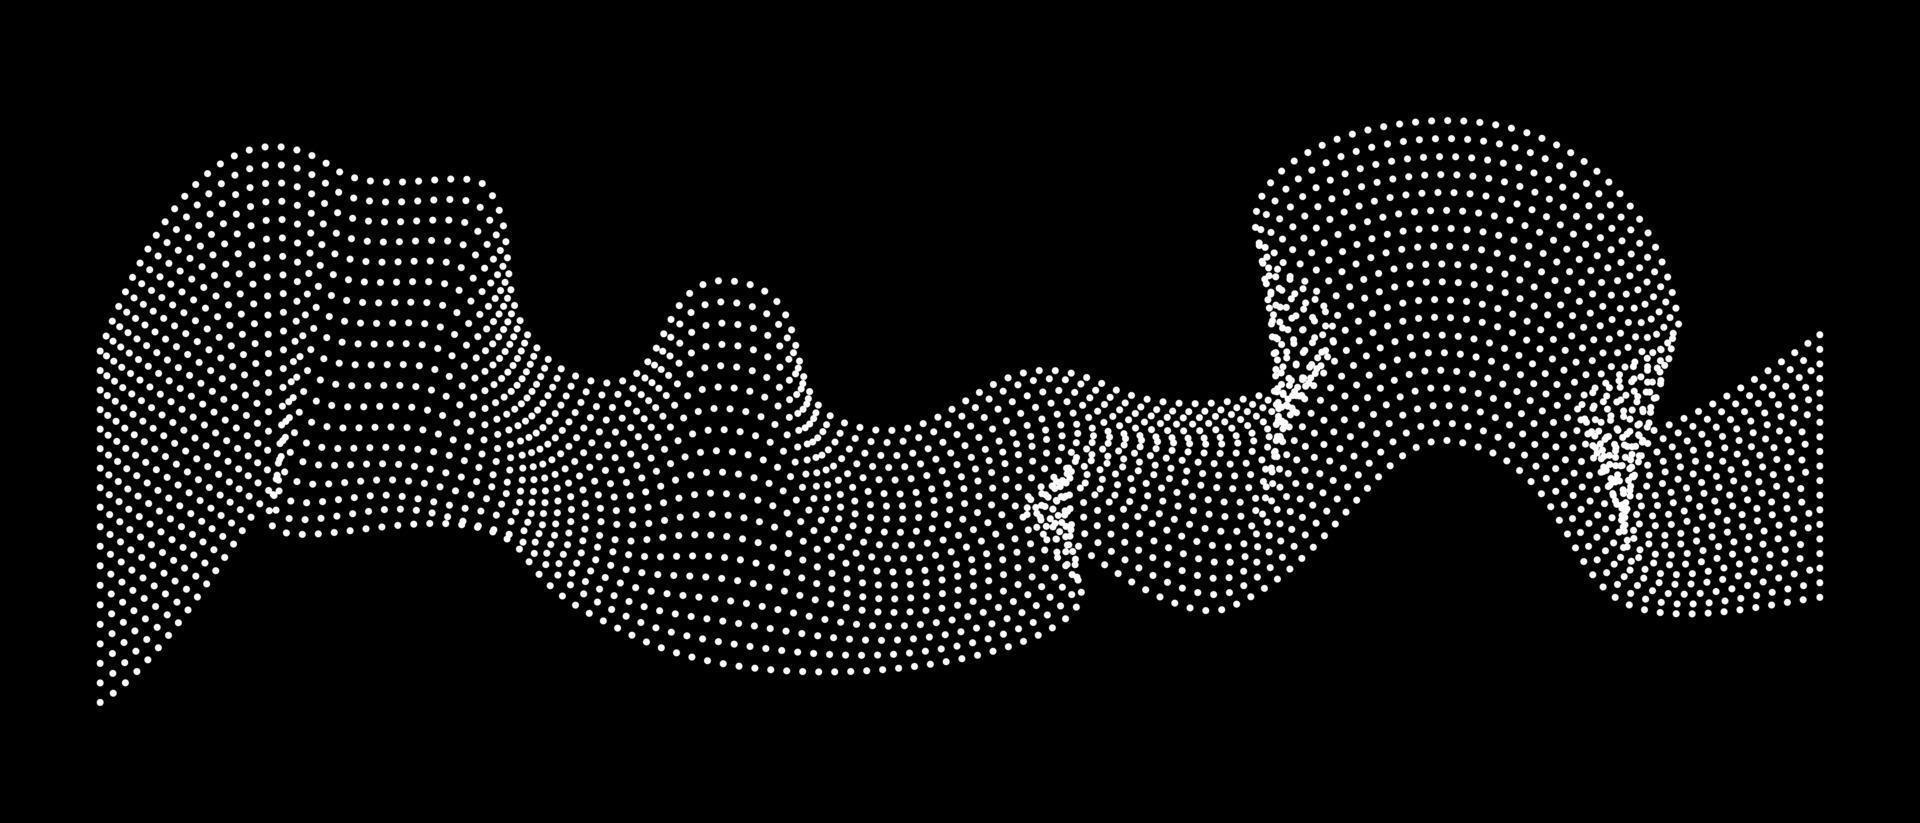 découler d'ondes dynamiques de points. arrière-plan futuriste noir et blanc, chaîne de nœuds. abstraction vectorielle du flux de particules dynamiques. vecteur